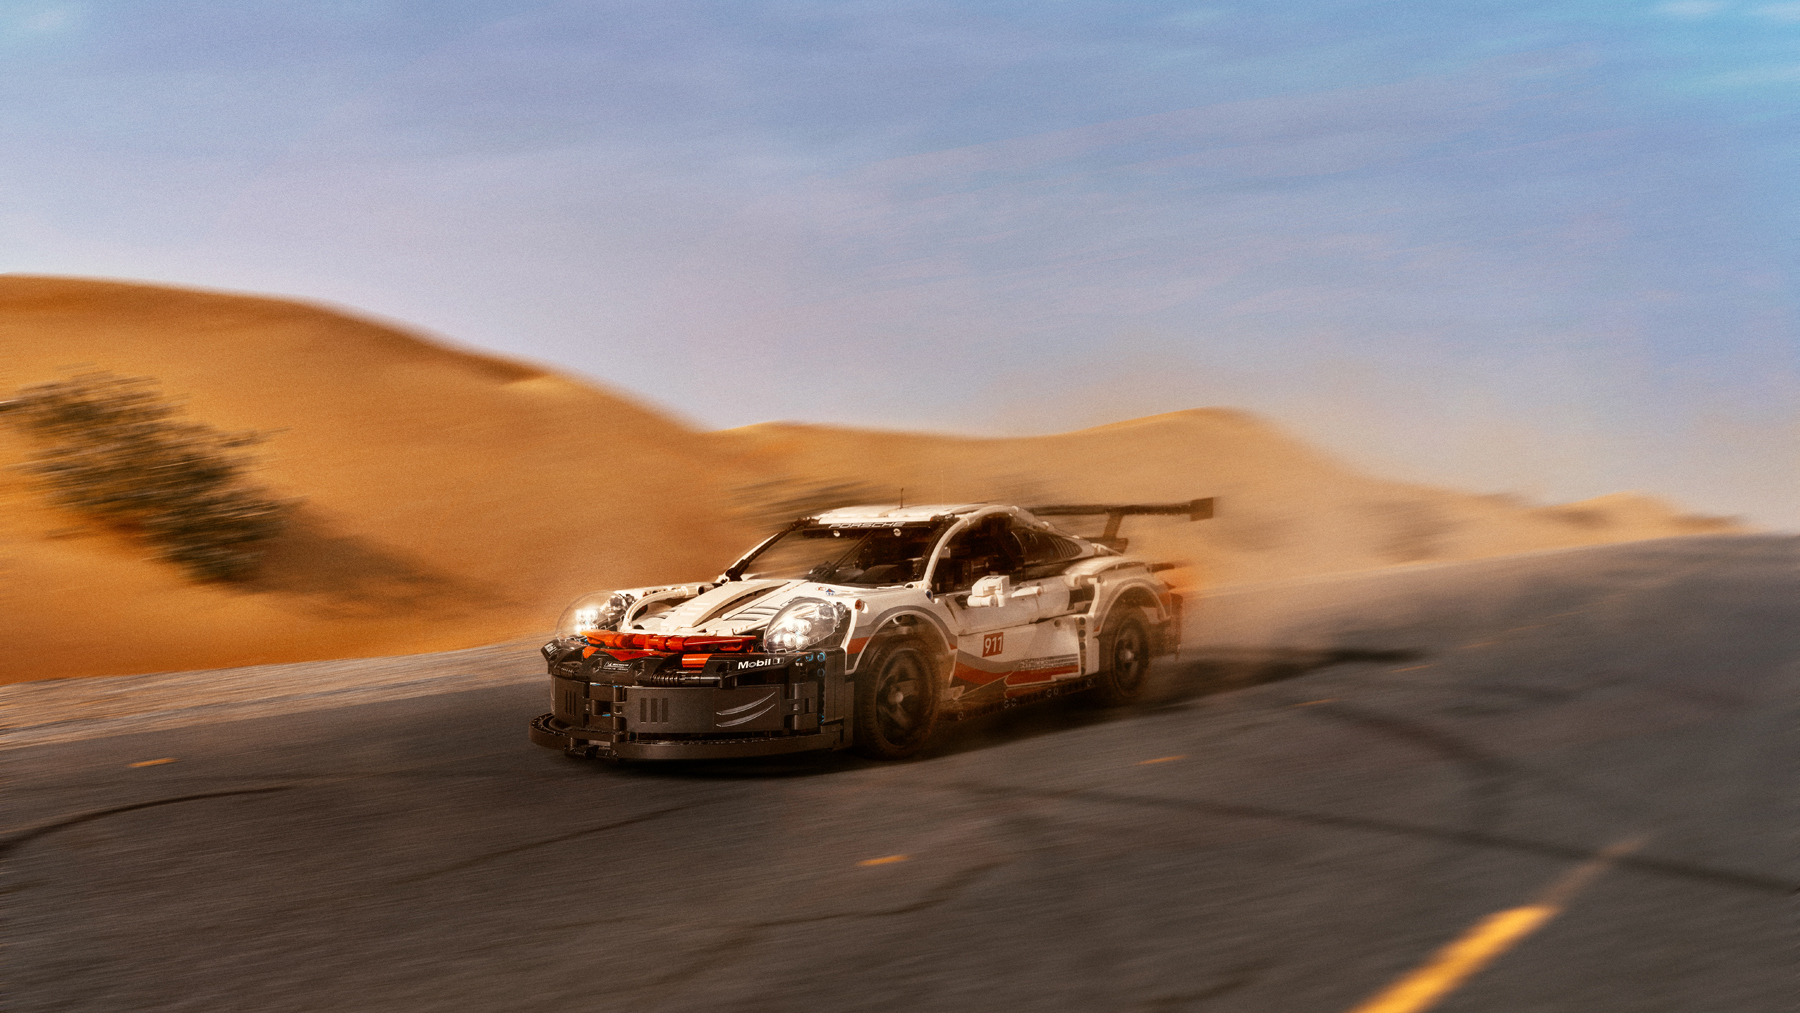 Lego Porsche 911 RSR in the Dubai desert